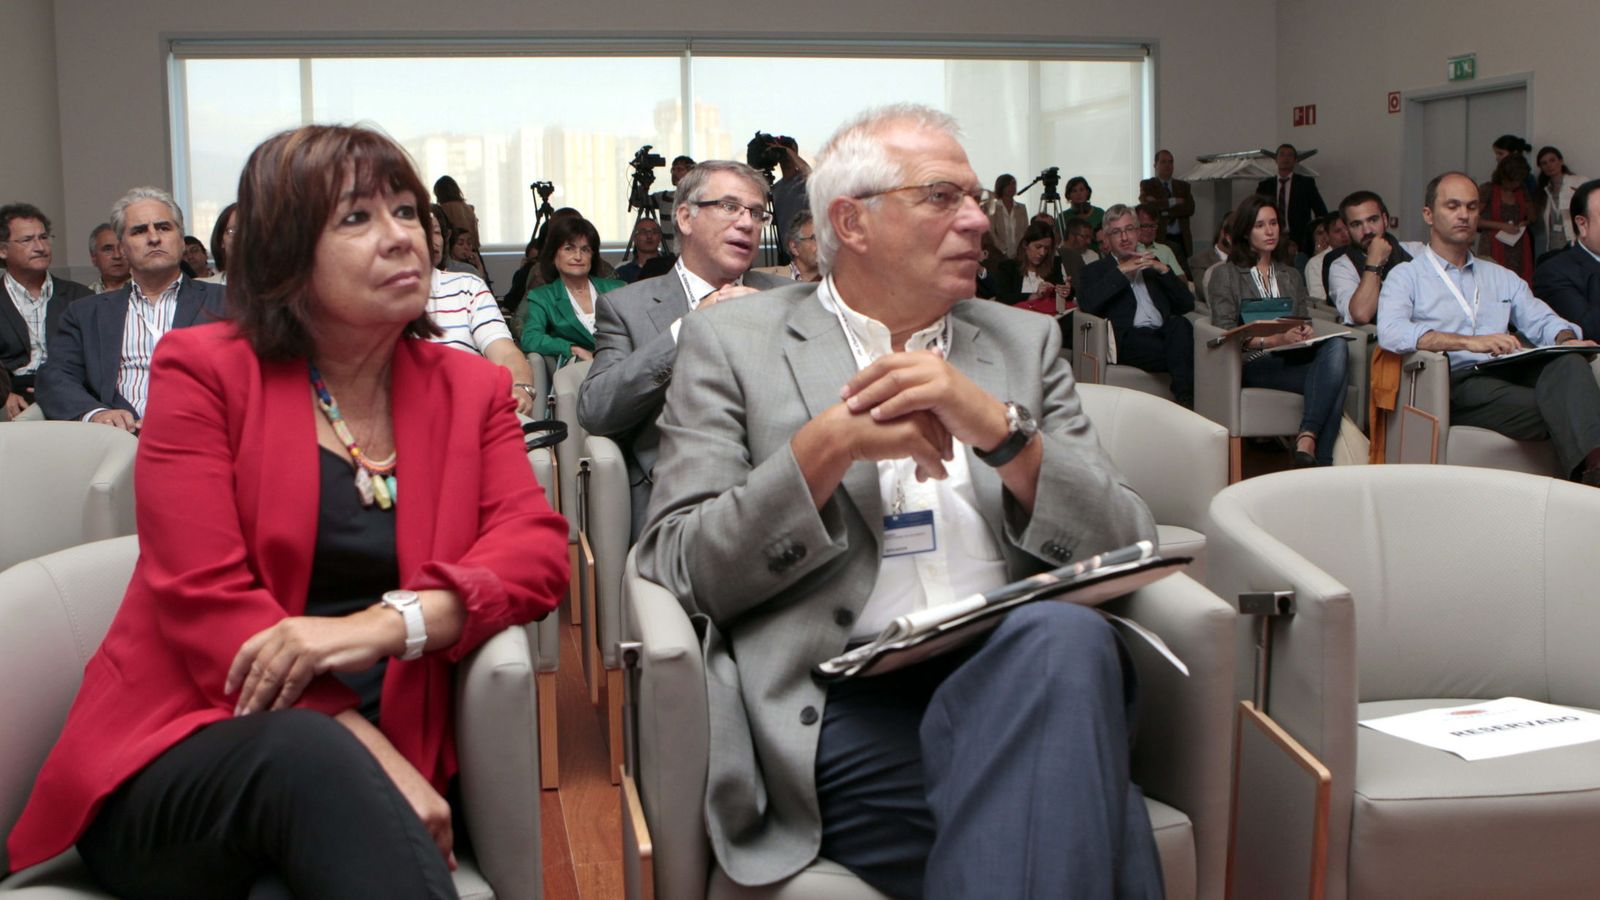 Foto: Los exministros Cristina Narbona y Josep Borrel, el 2 de septiembre de 2013, durante un congreso en Bilbao. (EFE)